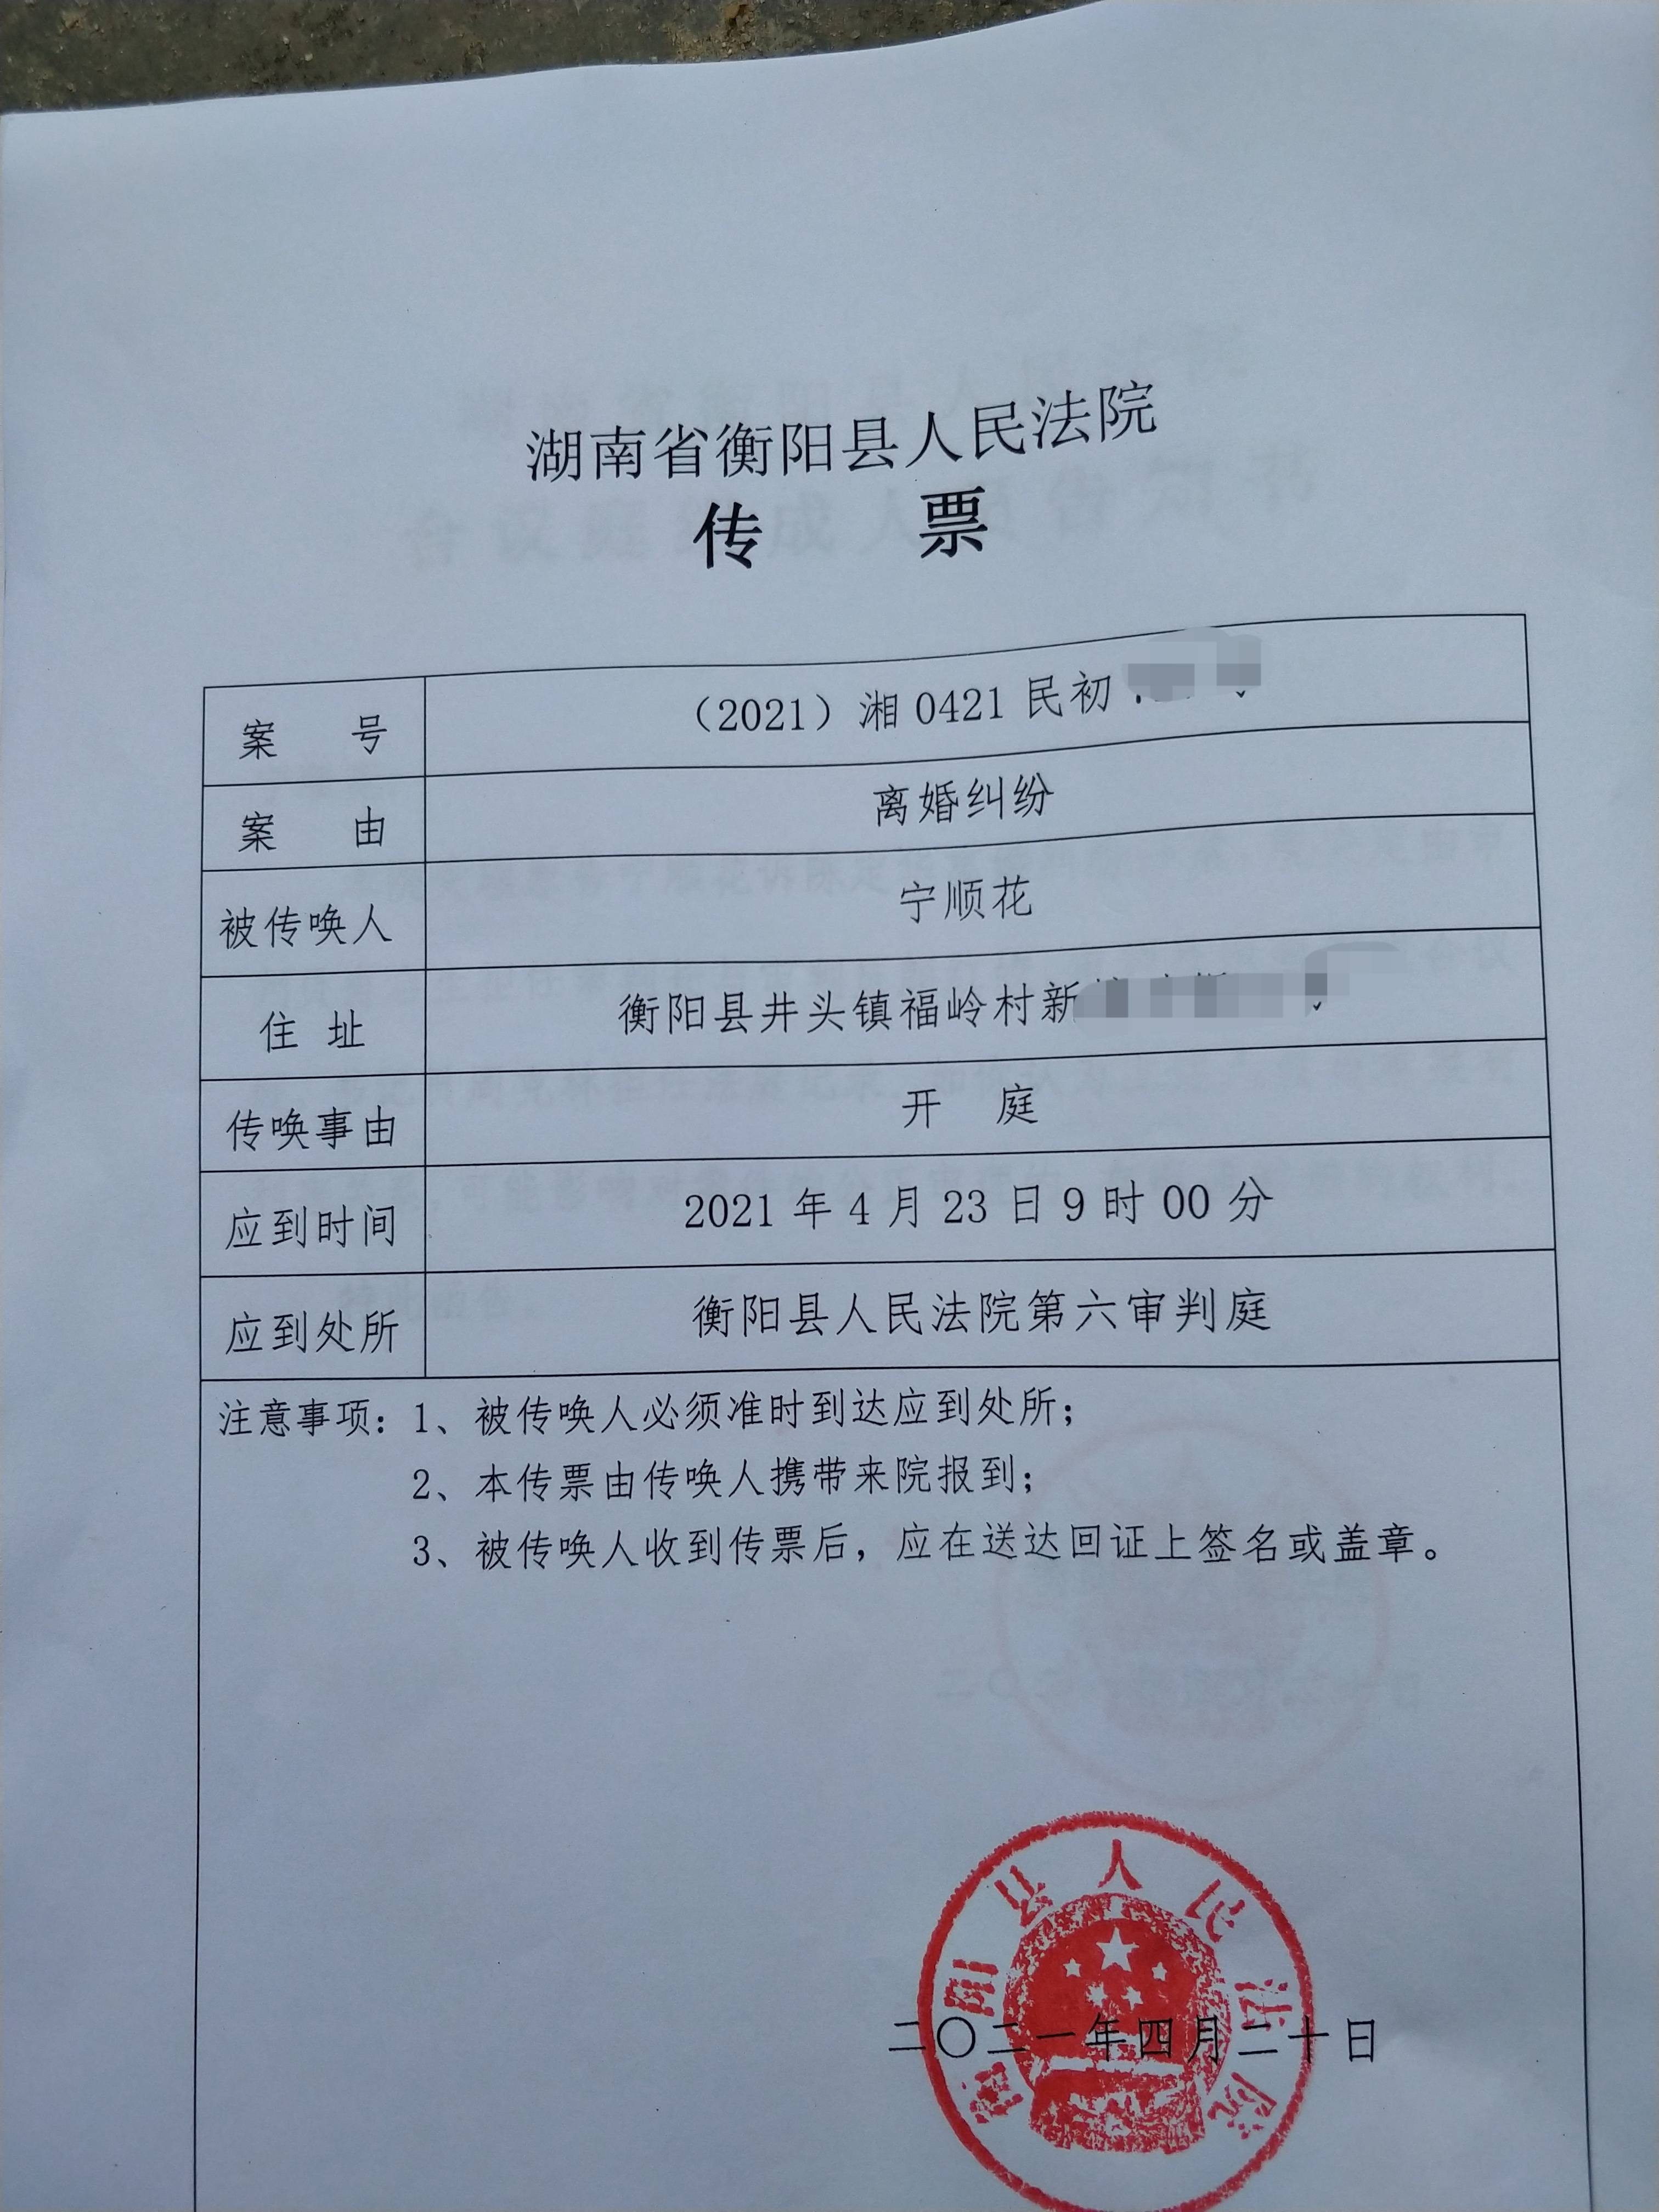 传票盖有衡阳县人民法院公章,落款时间为2021年4月20日.